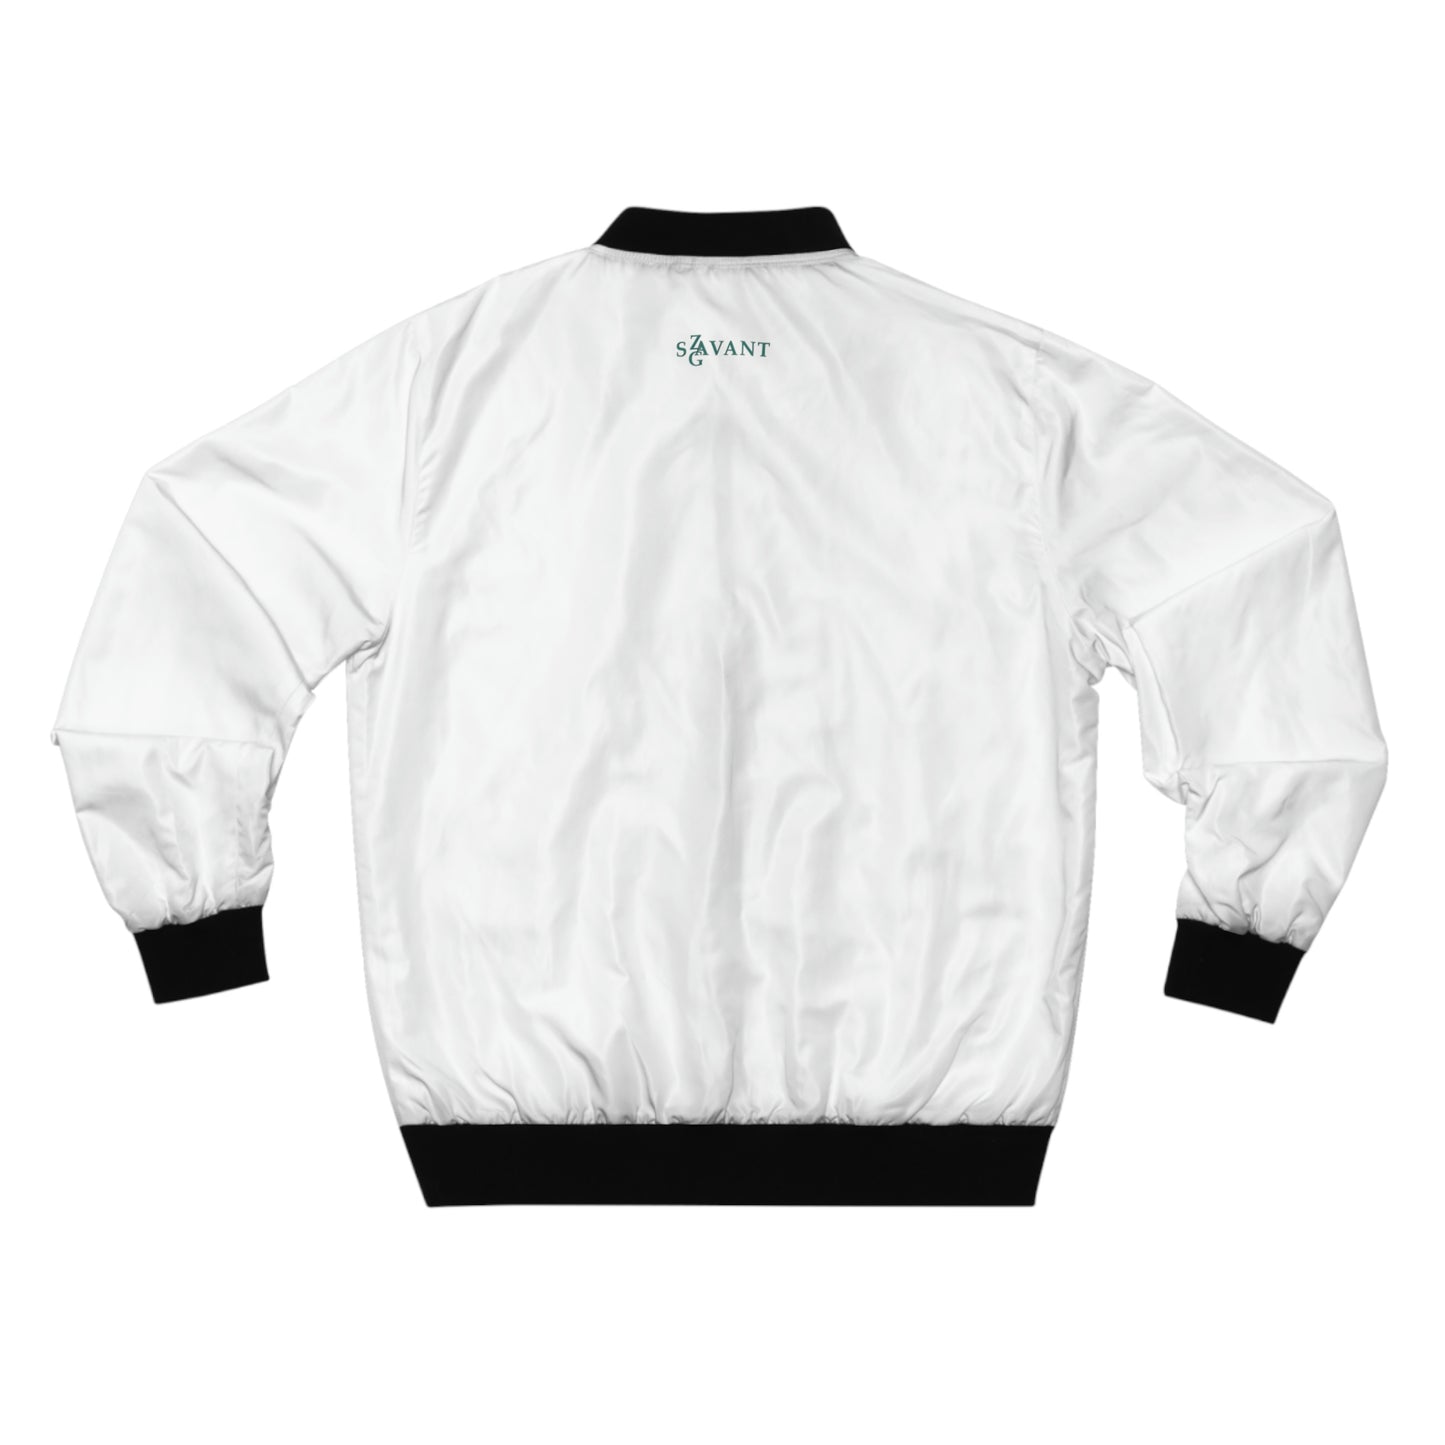 Men's Bomber Jacket in White